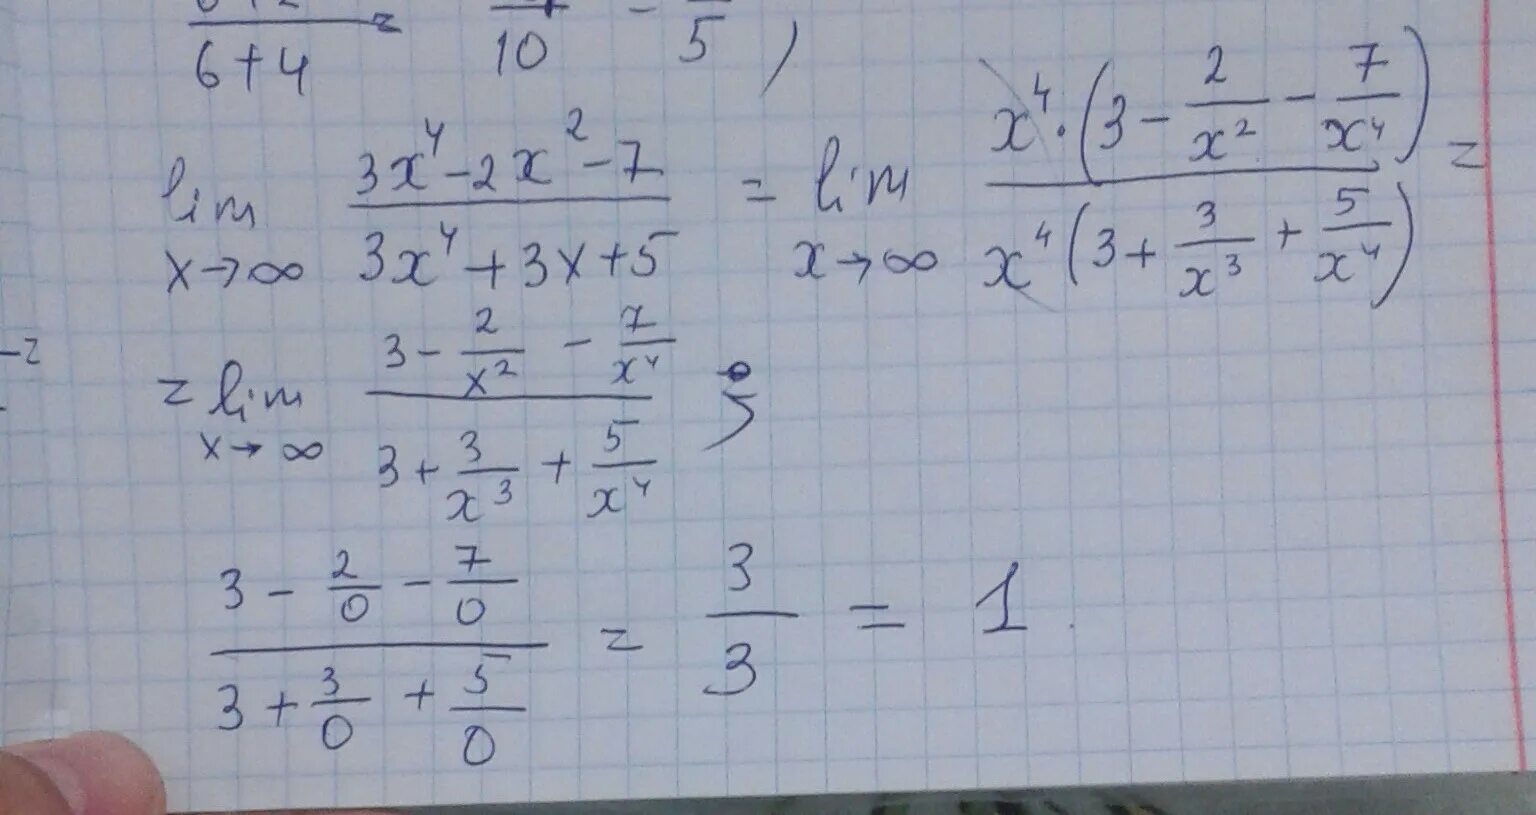 Lim x стремится к бесконечности 2/x 2+3x. Lim x стремится к бесконечности x^2-4x+3/x+5. Lim x стремится к бесконечности (2x/2x-3)^3x. Lim x стремится к бесконечности 3+x-5x4.